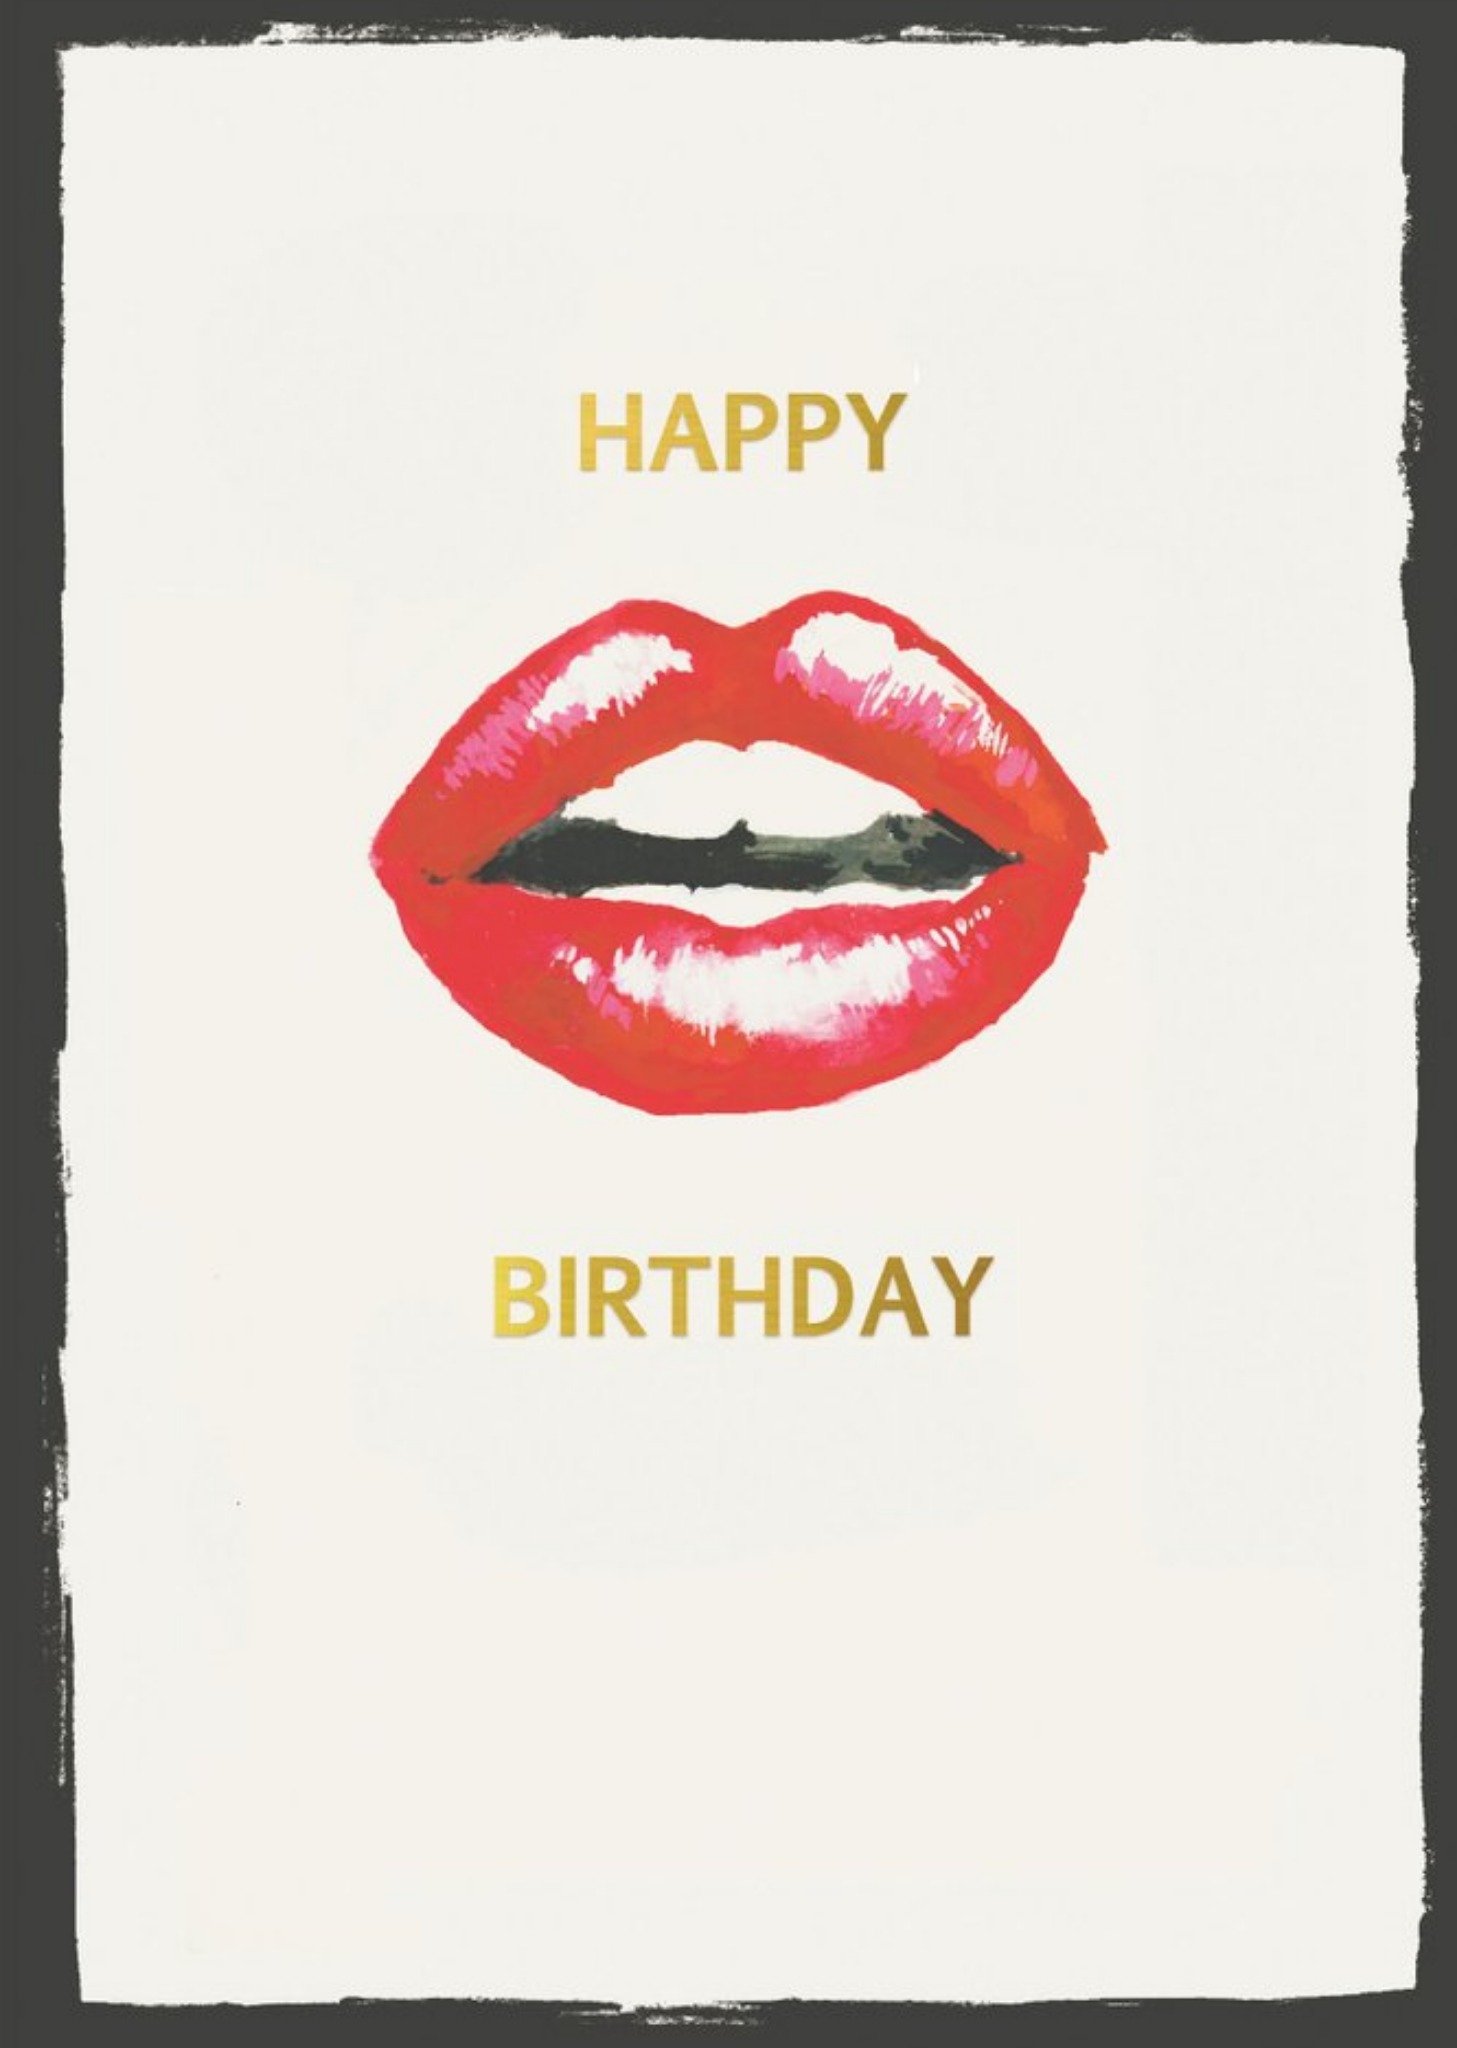 Sooshichacha Illustrated Lips Happy Birthday Card Ecard